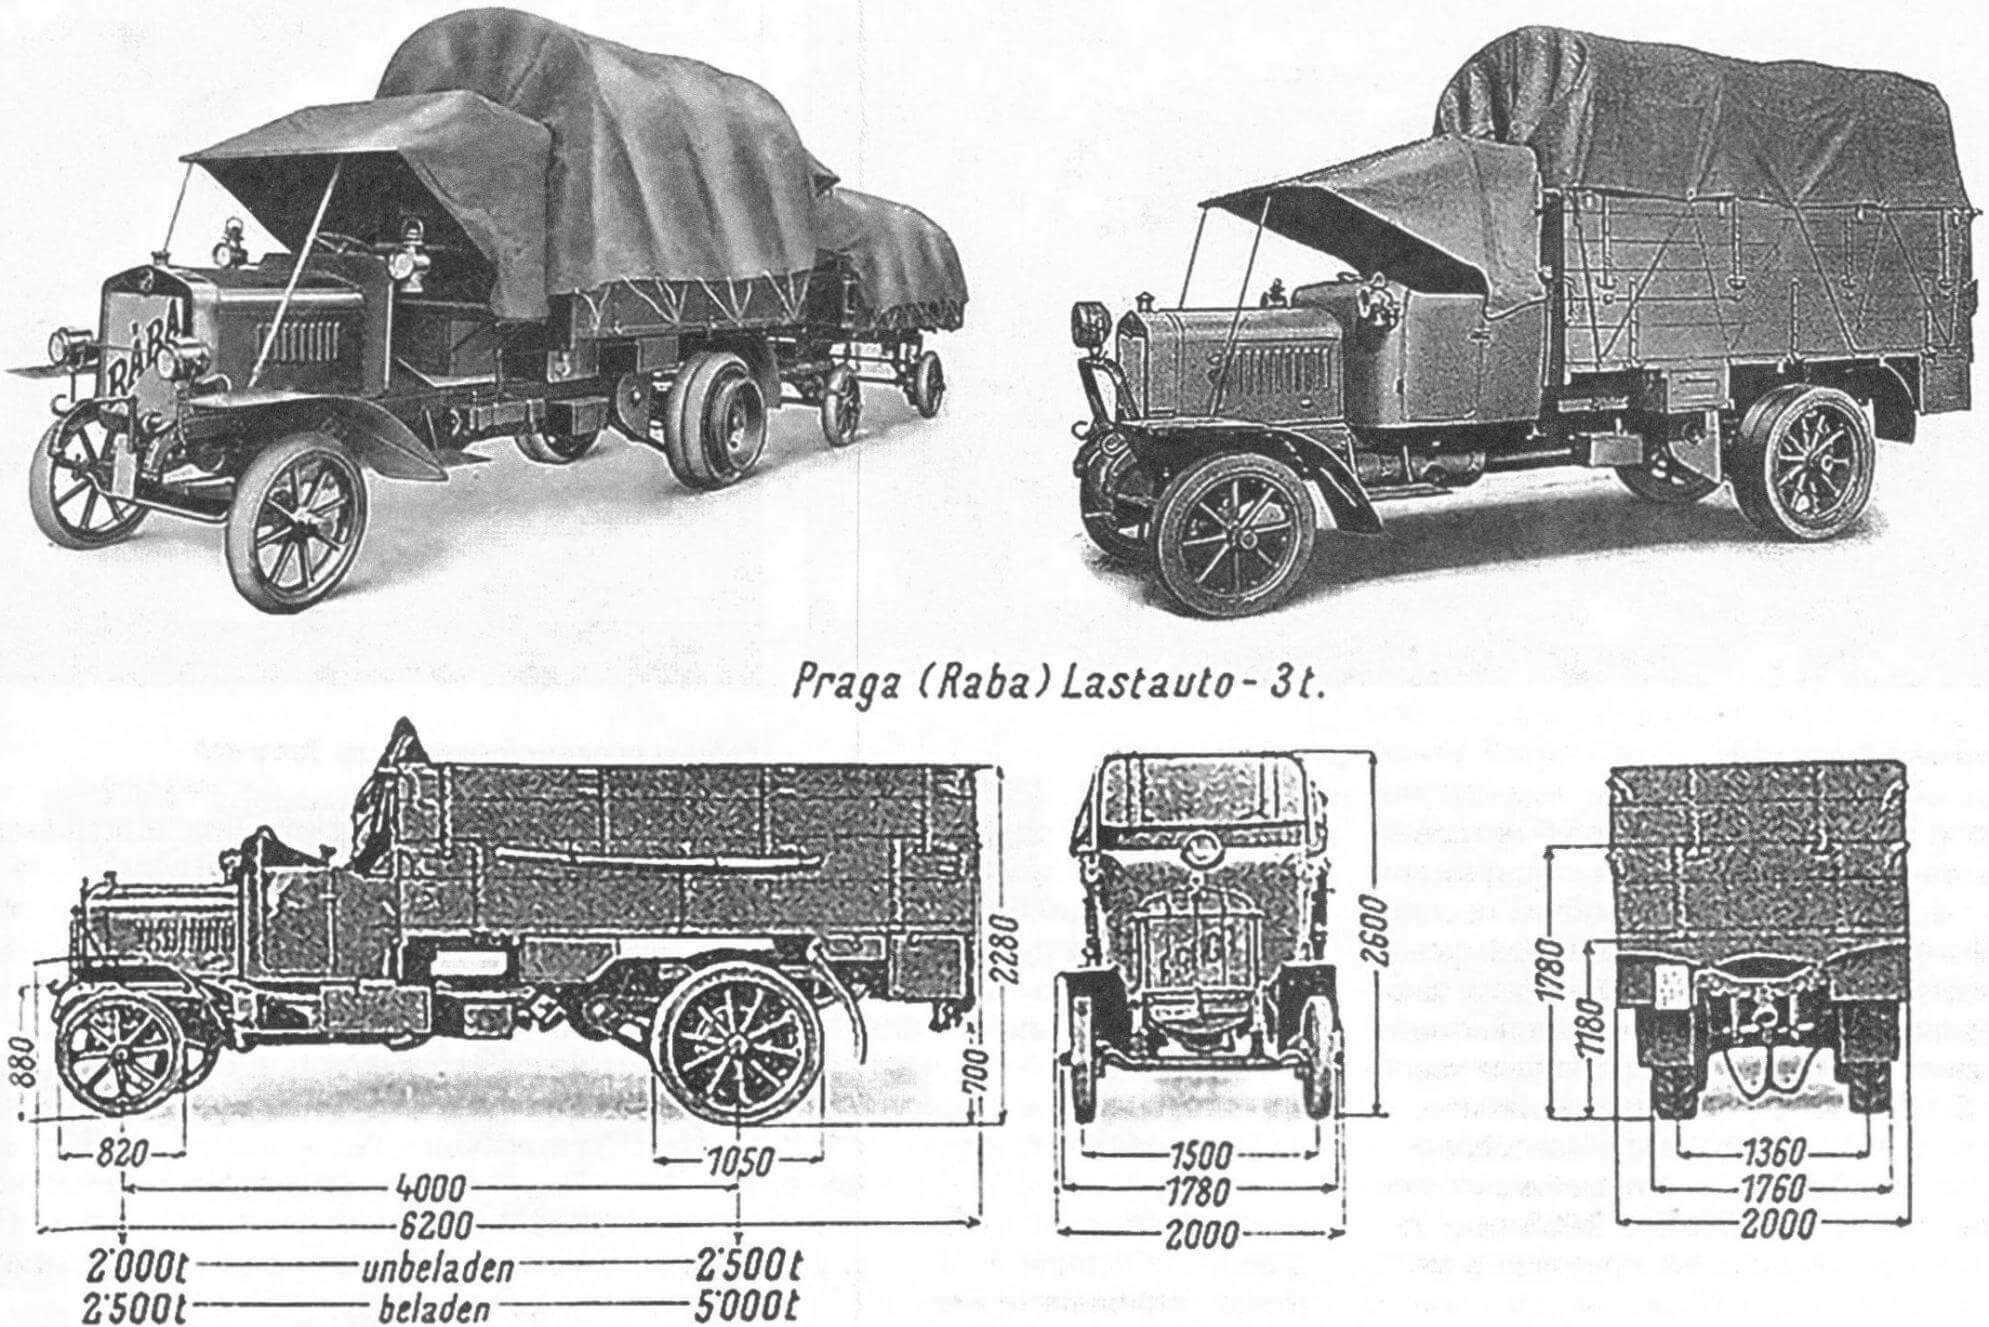 Raba (Praga V) - основной военный грузовик Австро-Венгрии